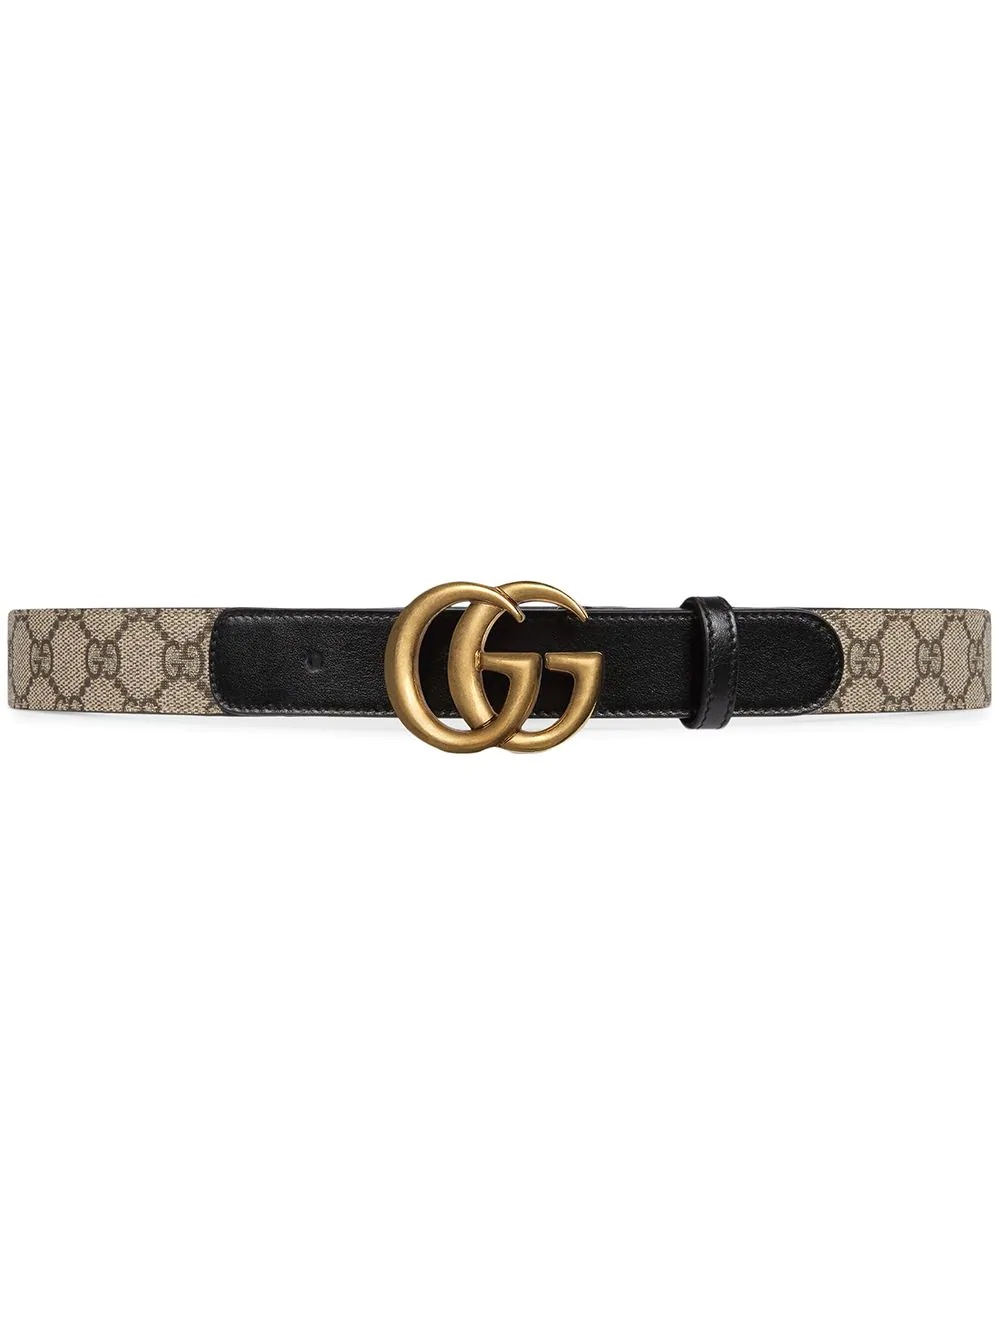 Double G buckle GG belt - 1